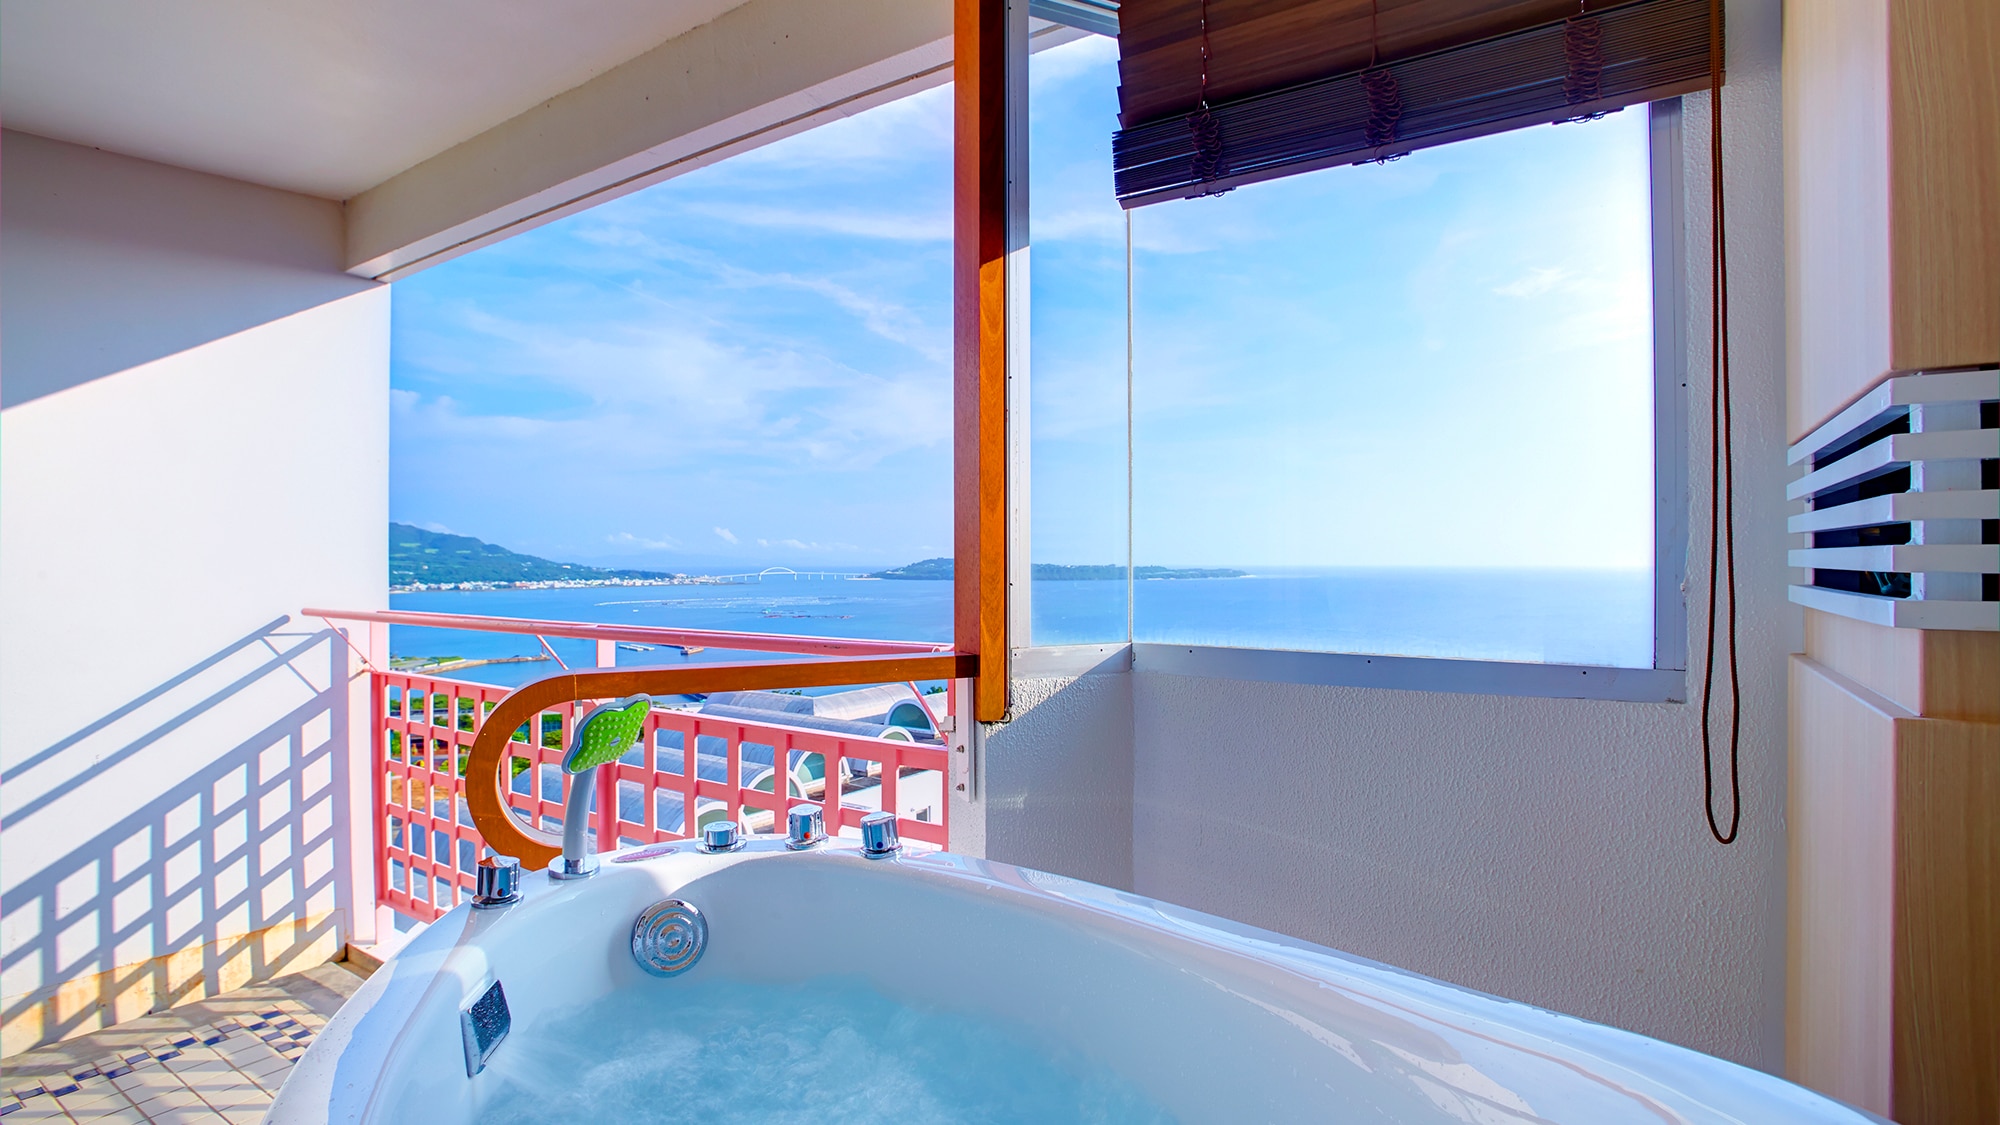 【远洋尊贵西式房+观景浴】尊贵双床房。阳台上设有观景浴池。